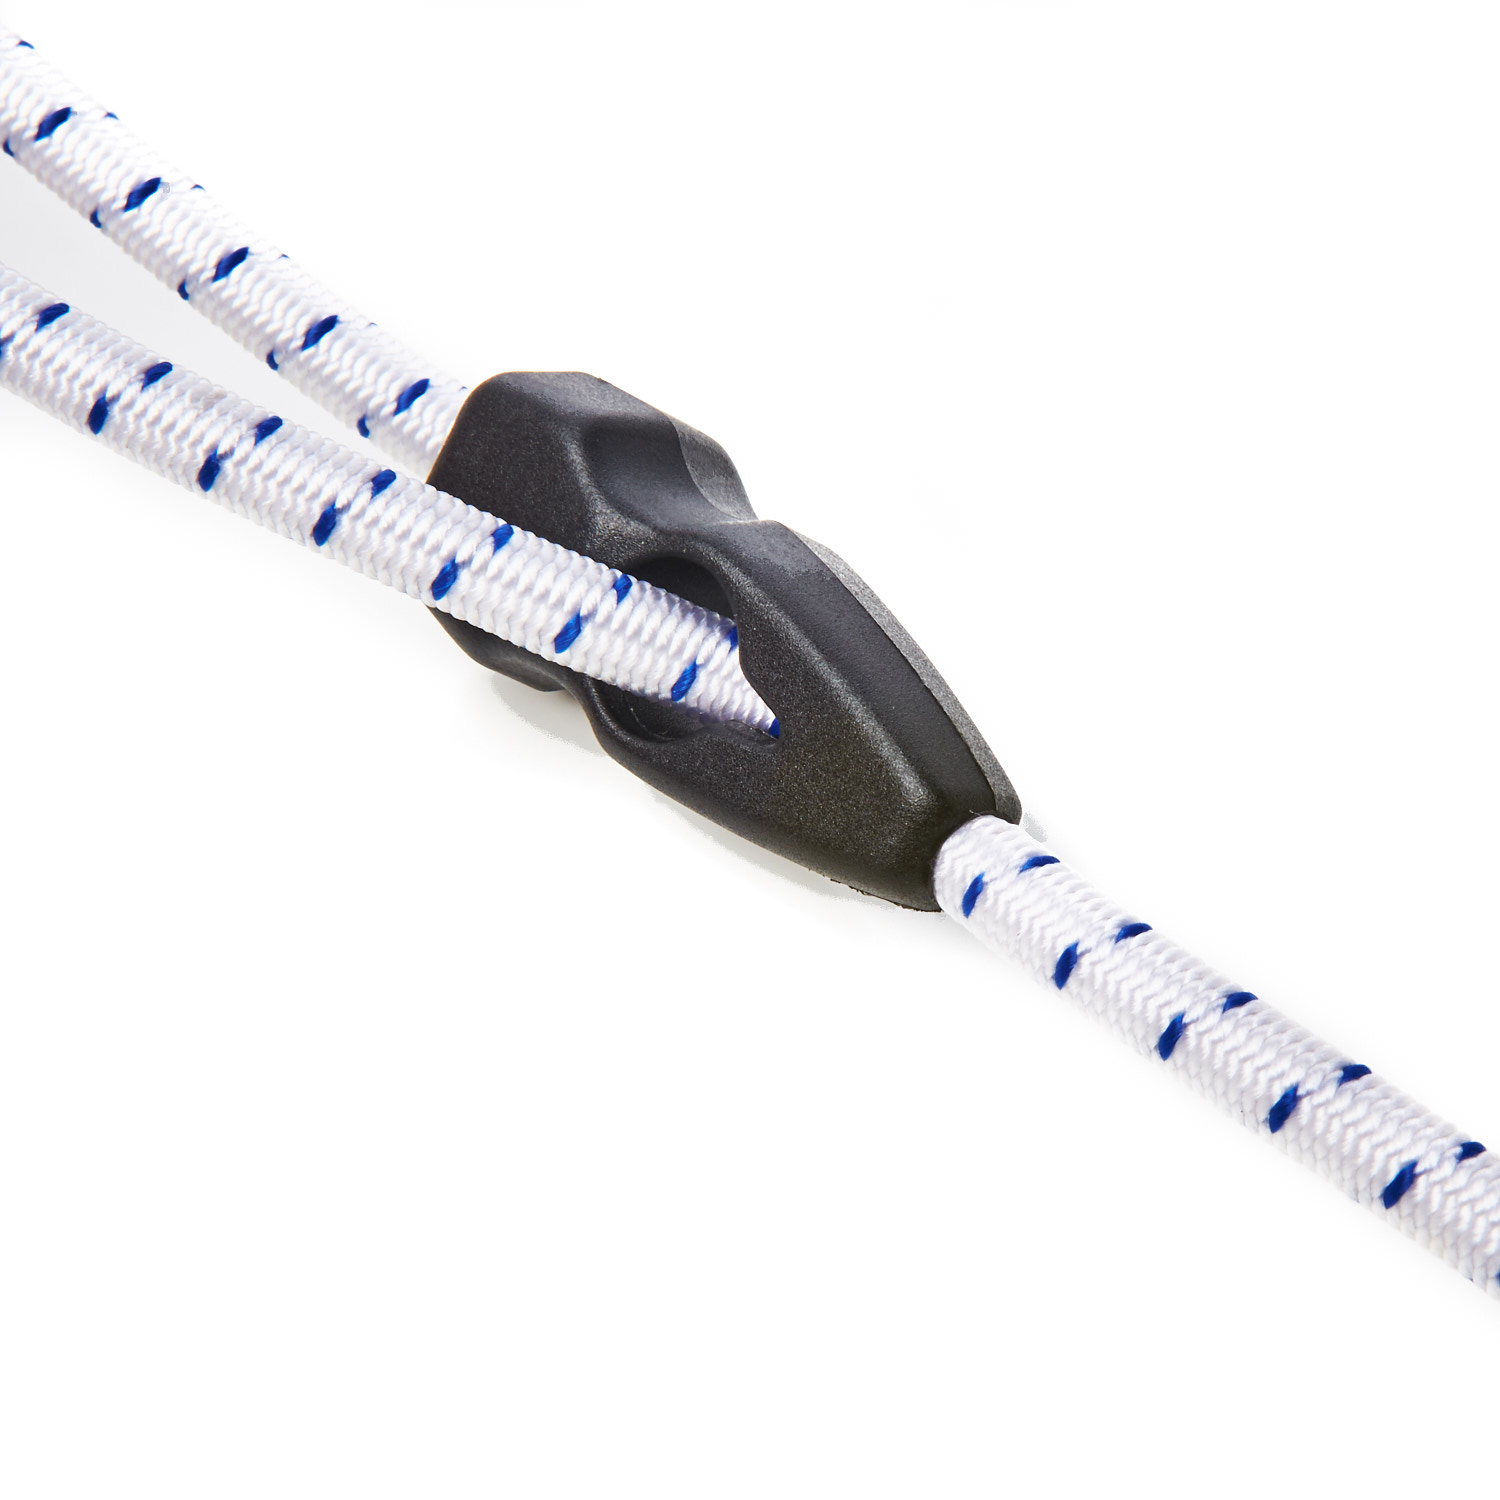 Plastic Nylon Grip Ties Bungee Cord Round Elastic